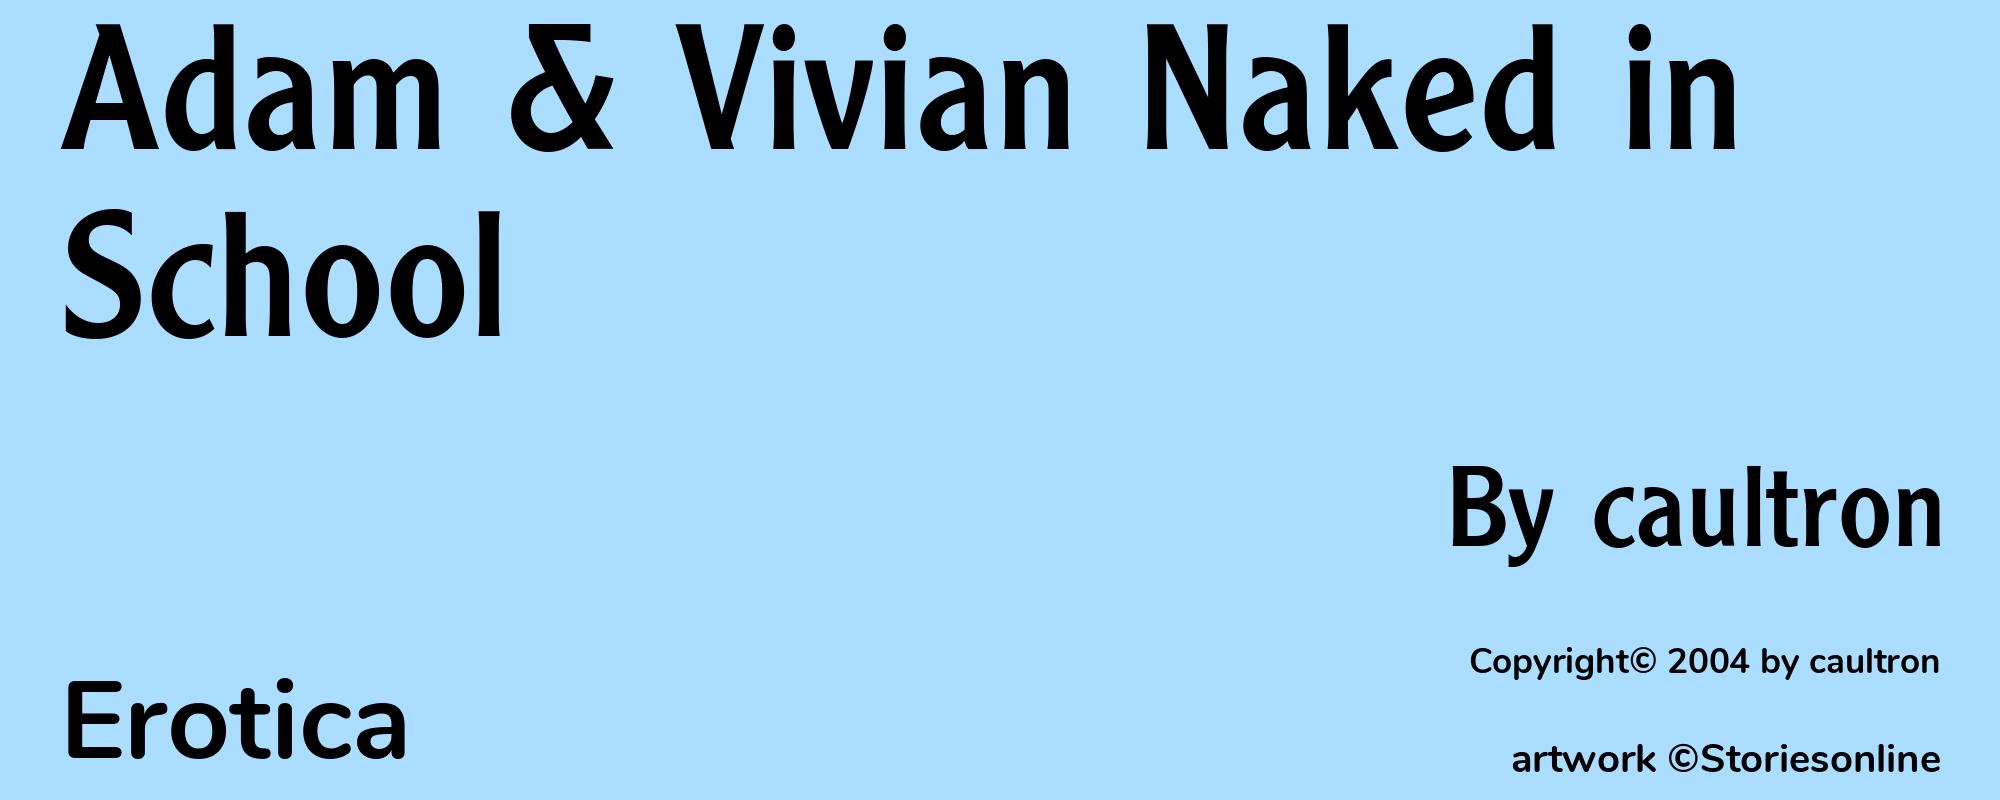 Adam & Vivian Naked in School - Cover